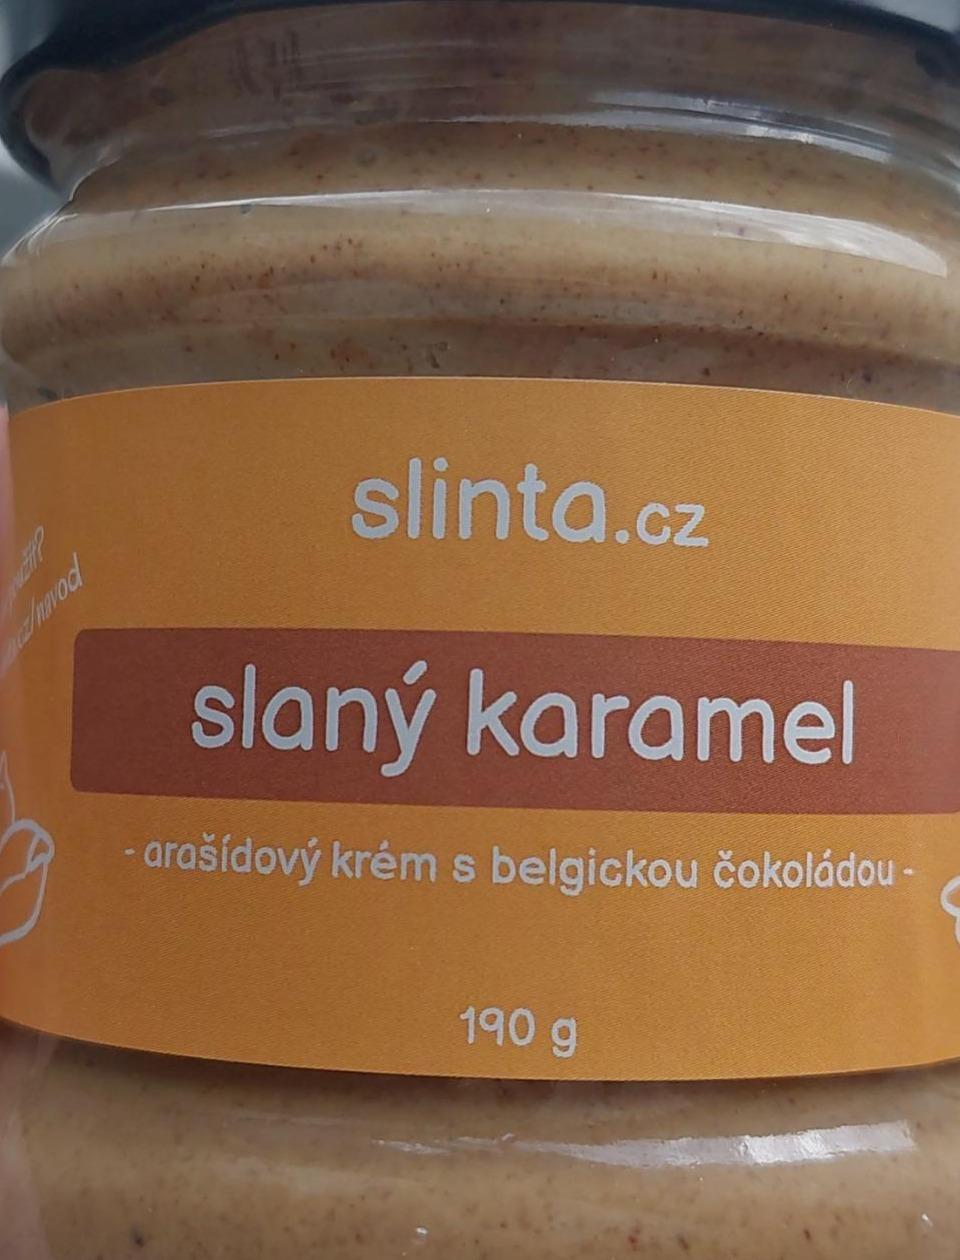 Fotografie - Slaný karamel Arašídový krém s belgickou čokoládou Slinta.cz